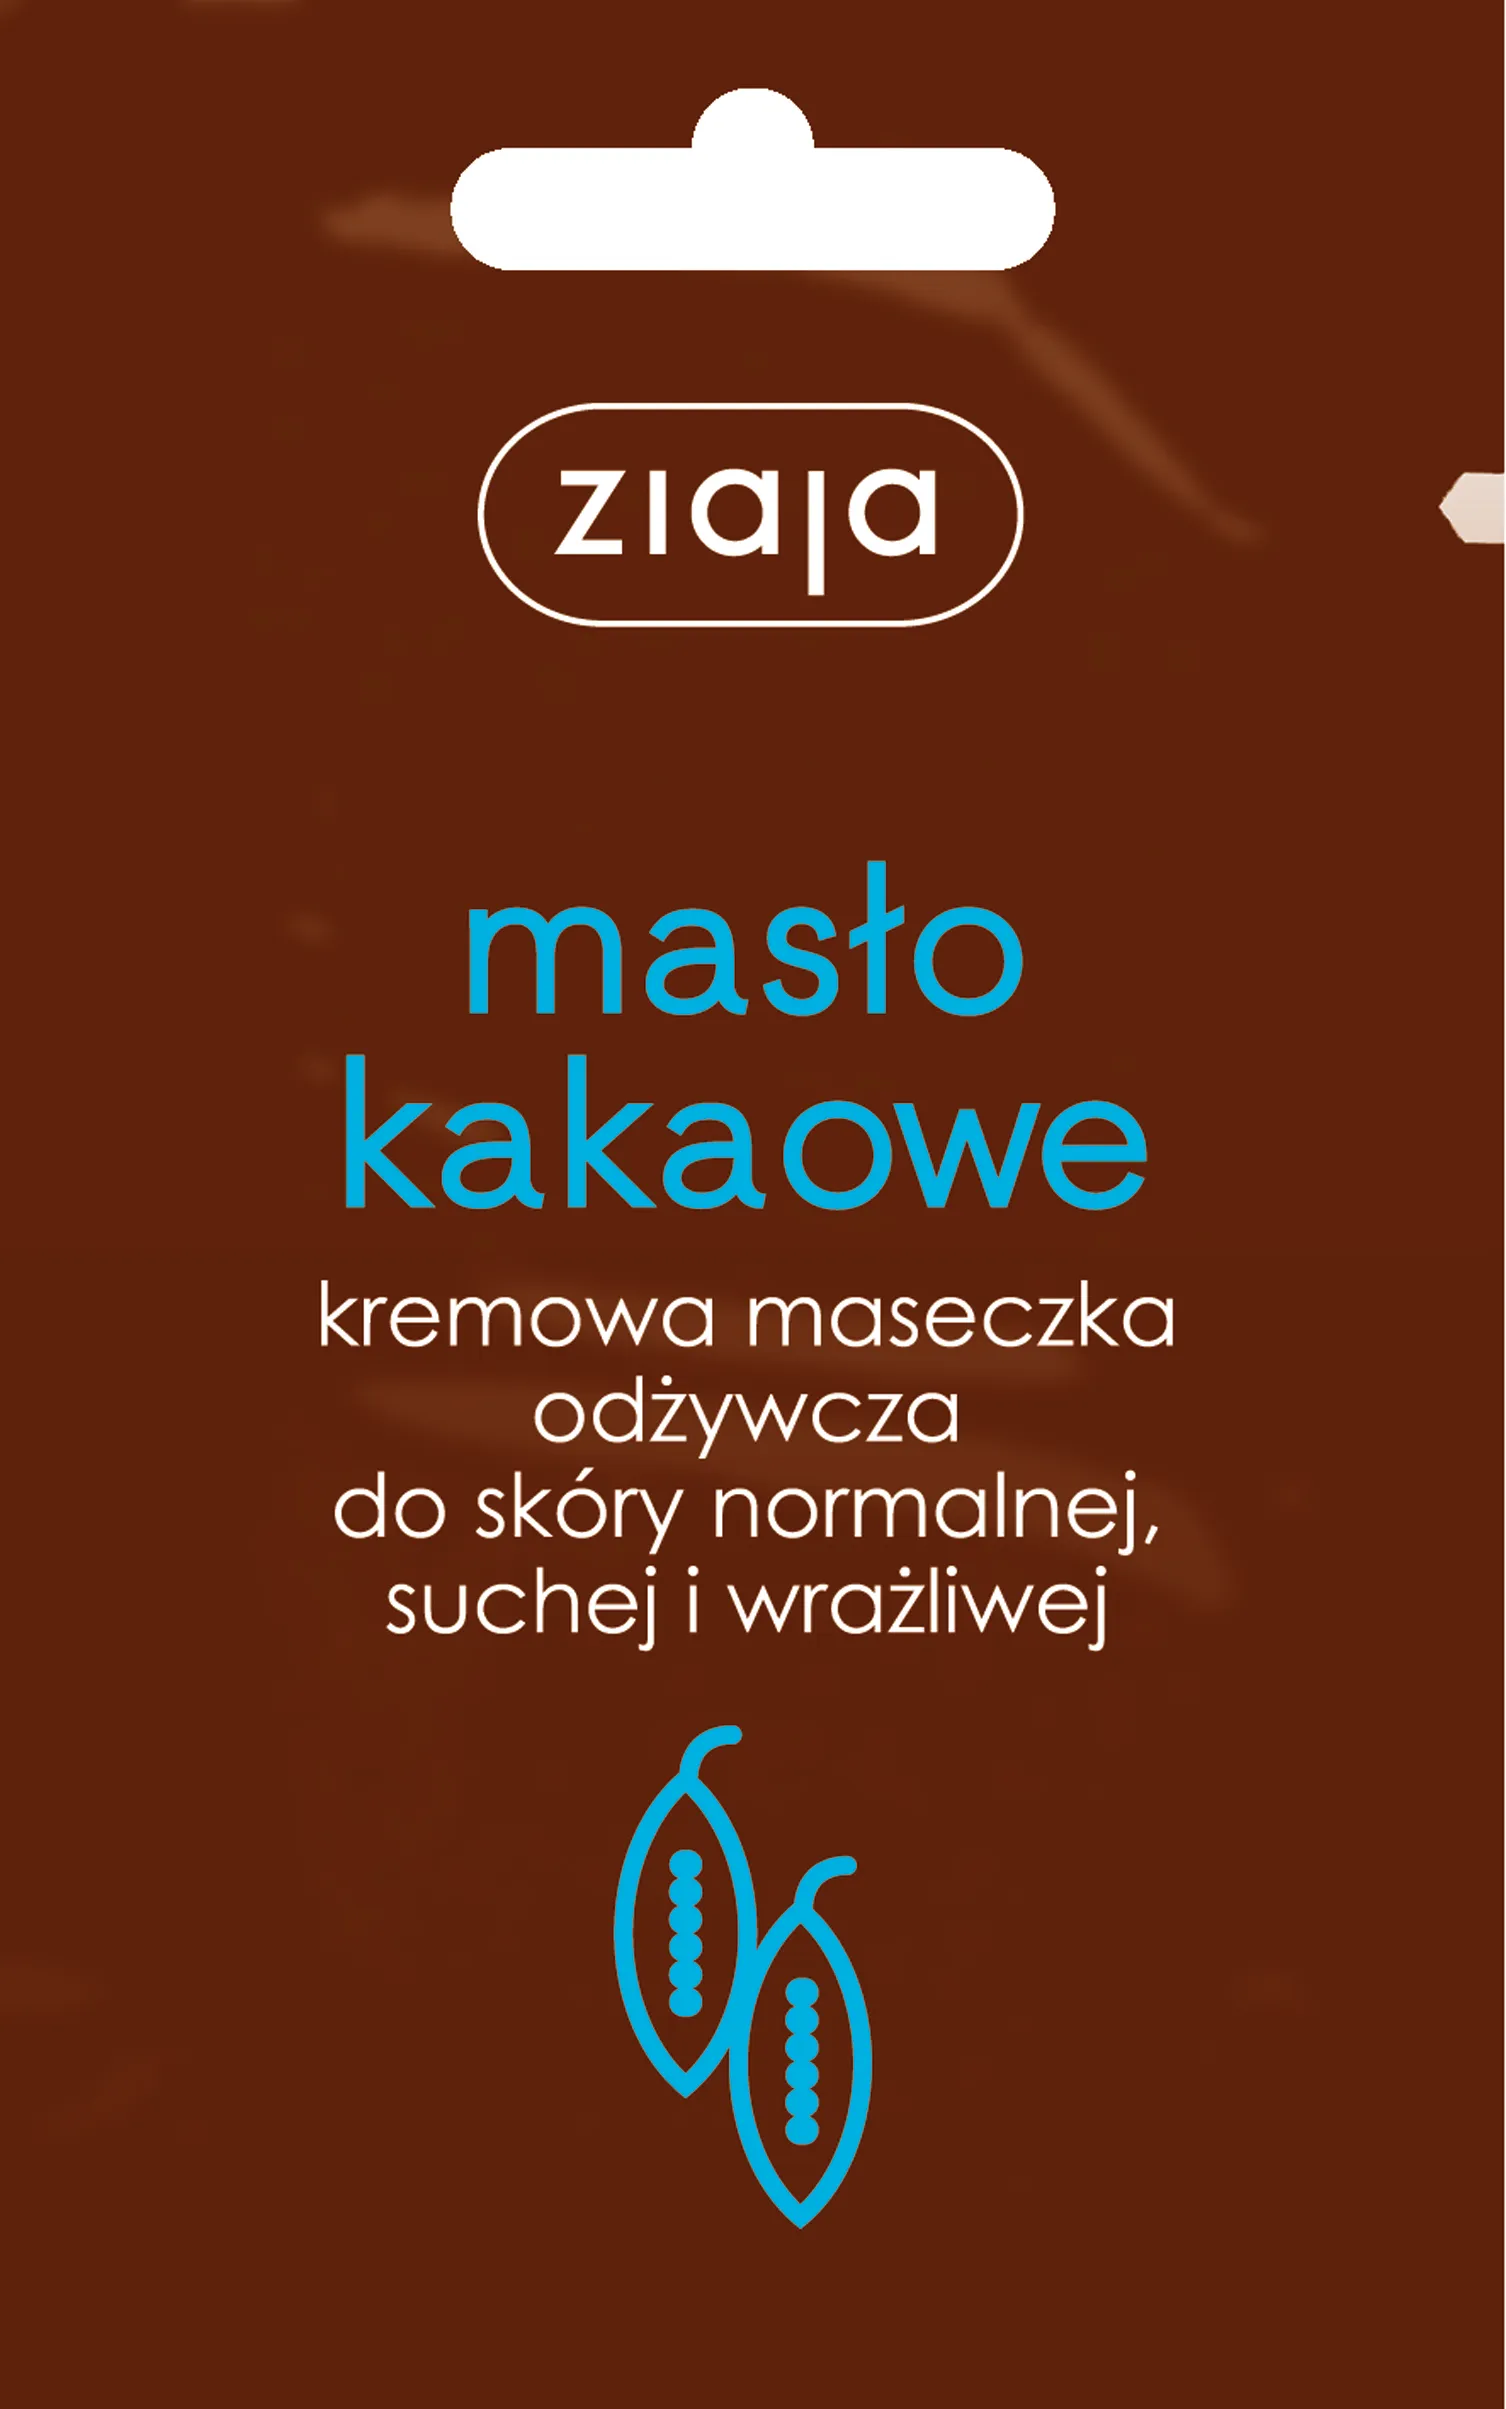 Ziaja Masło Kakaowe, kremowa maseczka odżywcza, 7 ml